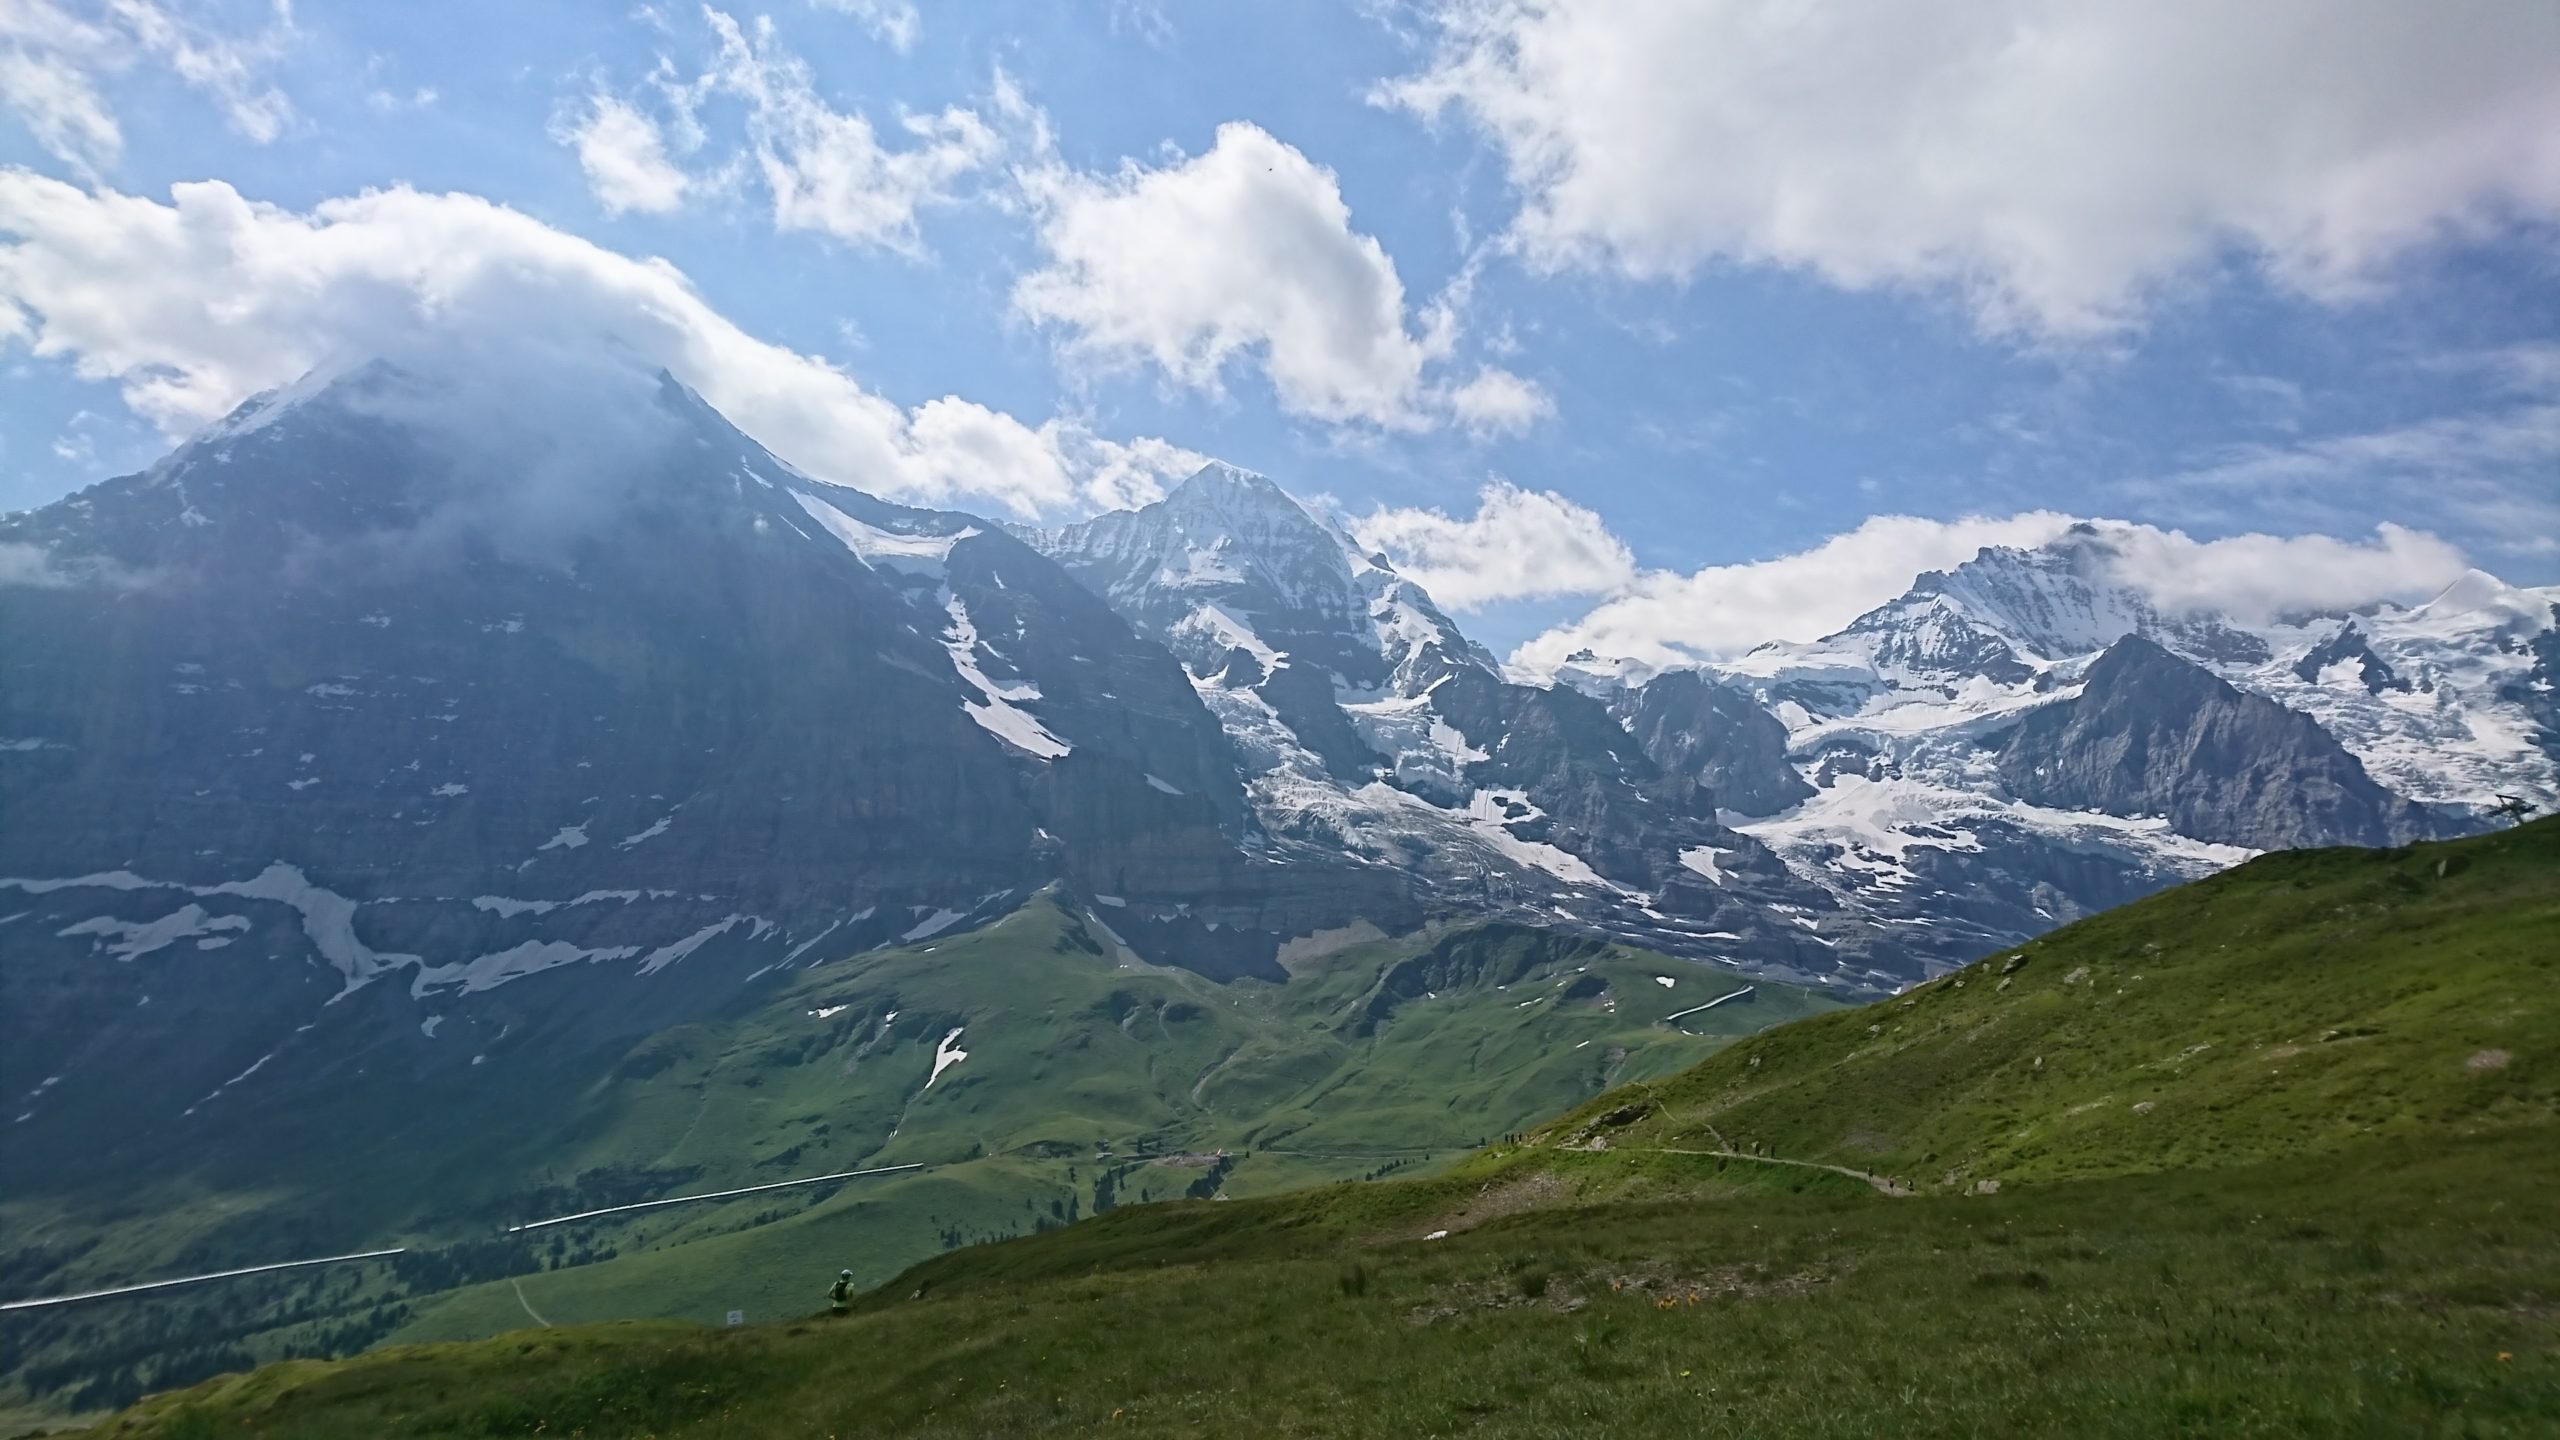 ベルナーオーバーラントパス】スイスのお得な鉄道パス。特徴・料金・通用範囲。｜Slow Travel Swiss Alps